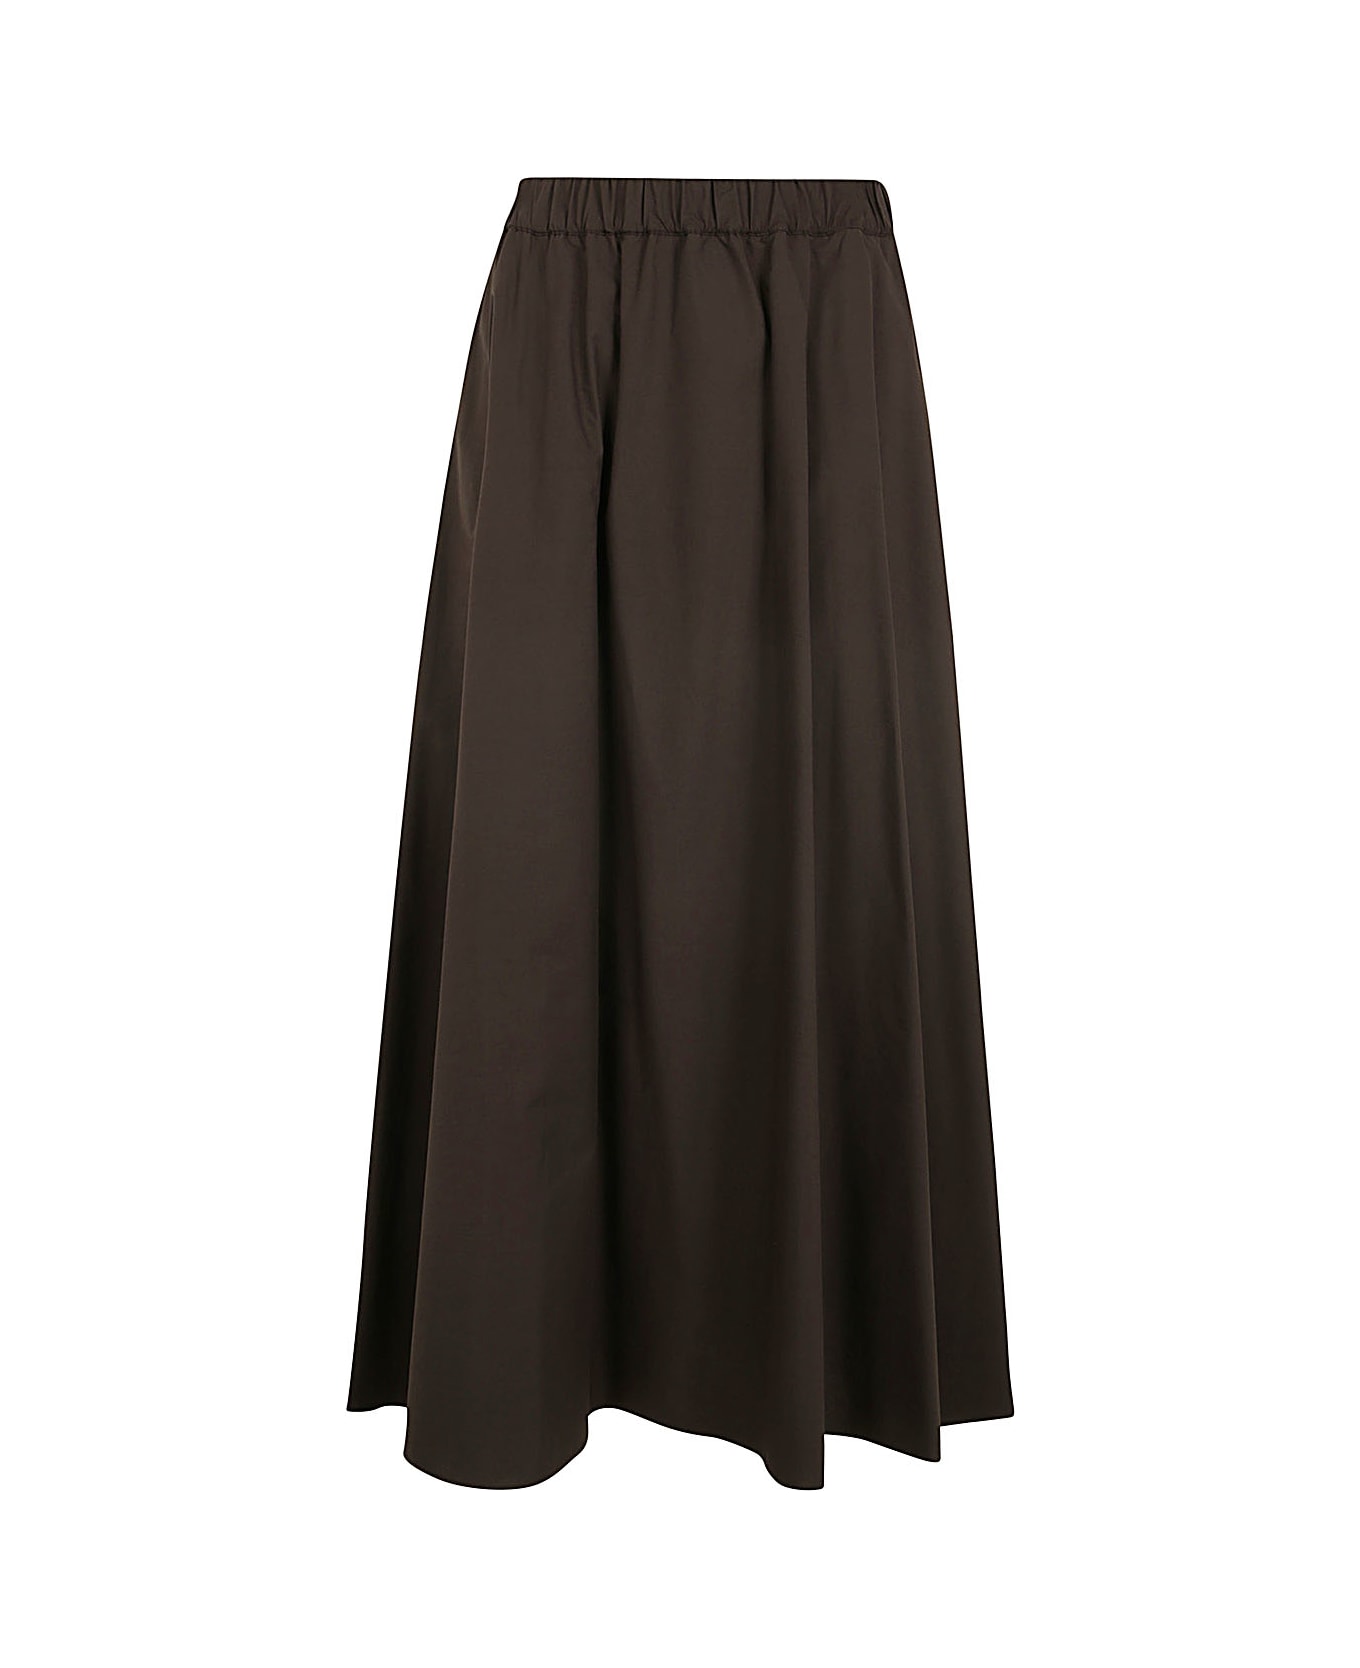 Parosh Long Skirt With Elastic Band - Dark Brown